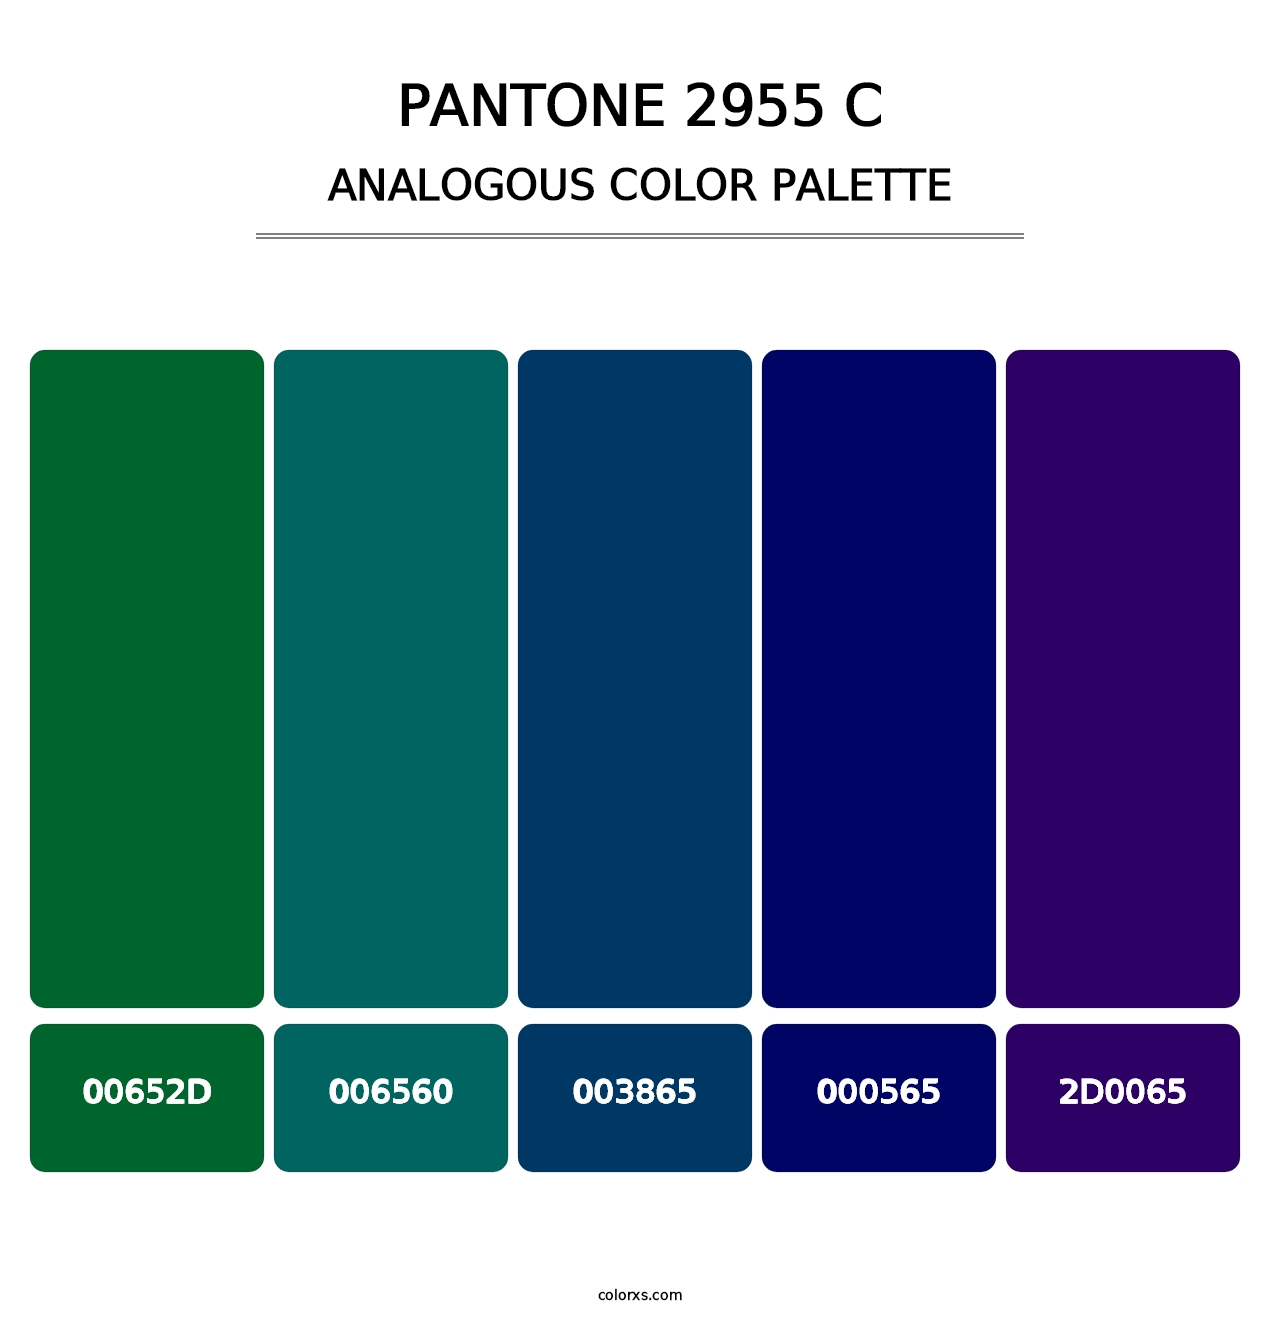 PANTONE 2955 C - Analogous Color Palette